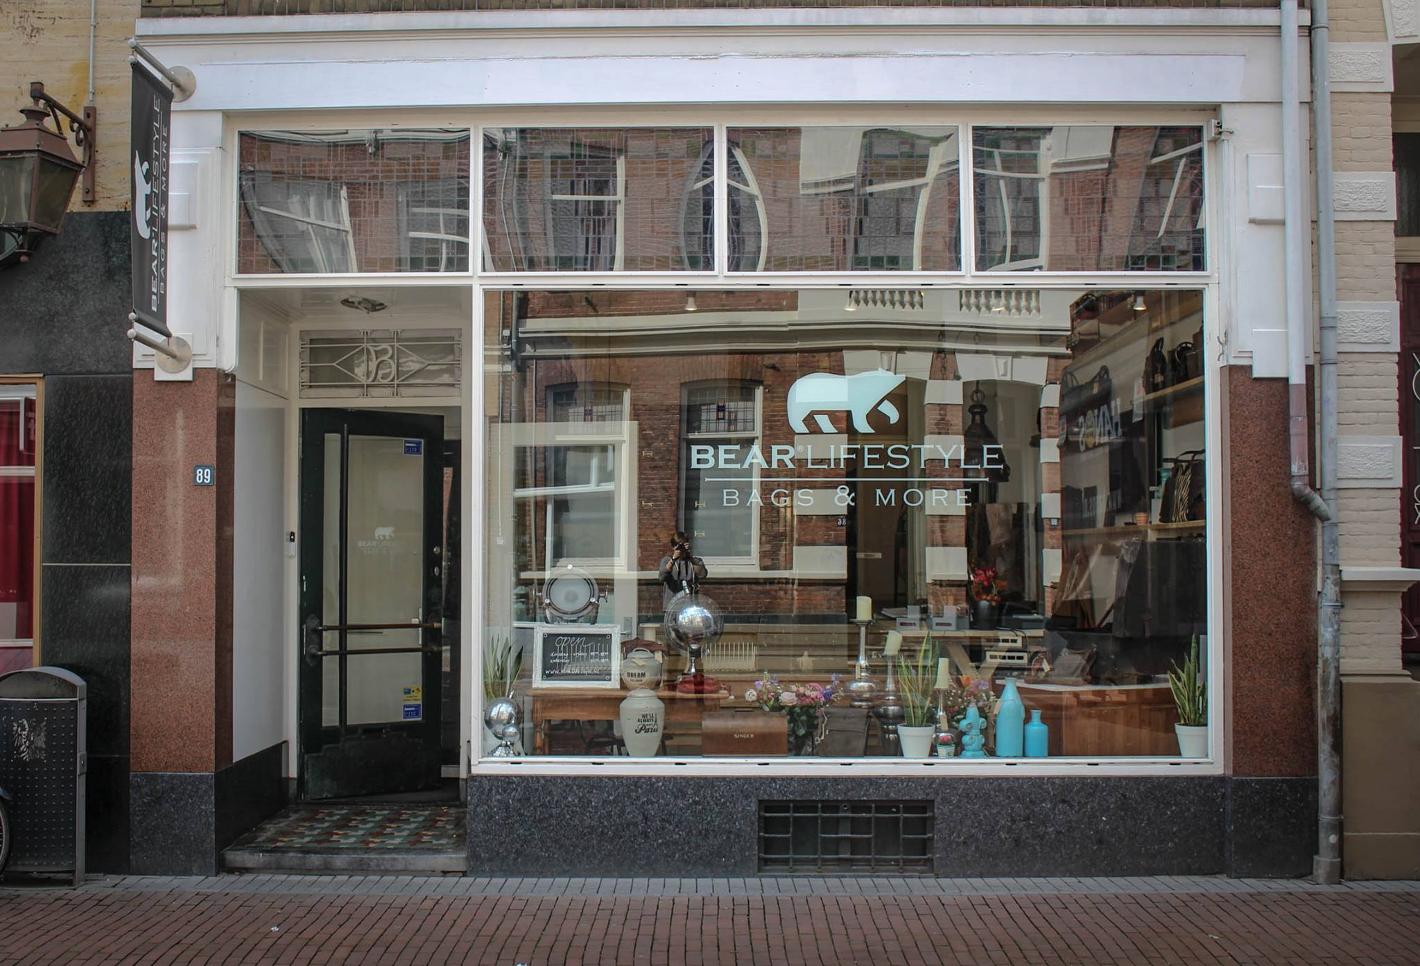 Foto BEAR Lifestyle in Nijmegen, Winkelen, Mode & kleding - #1